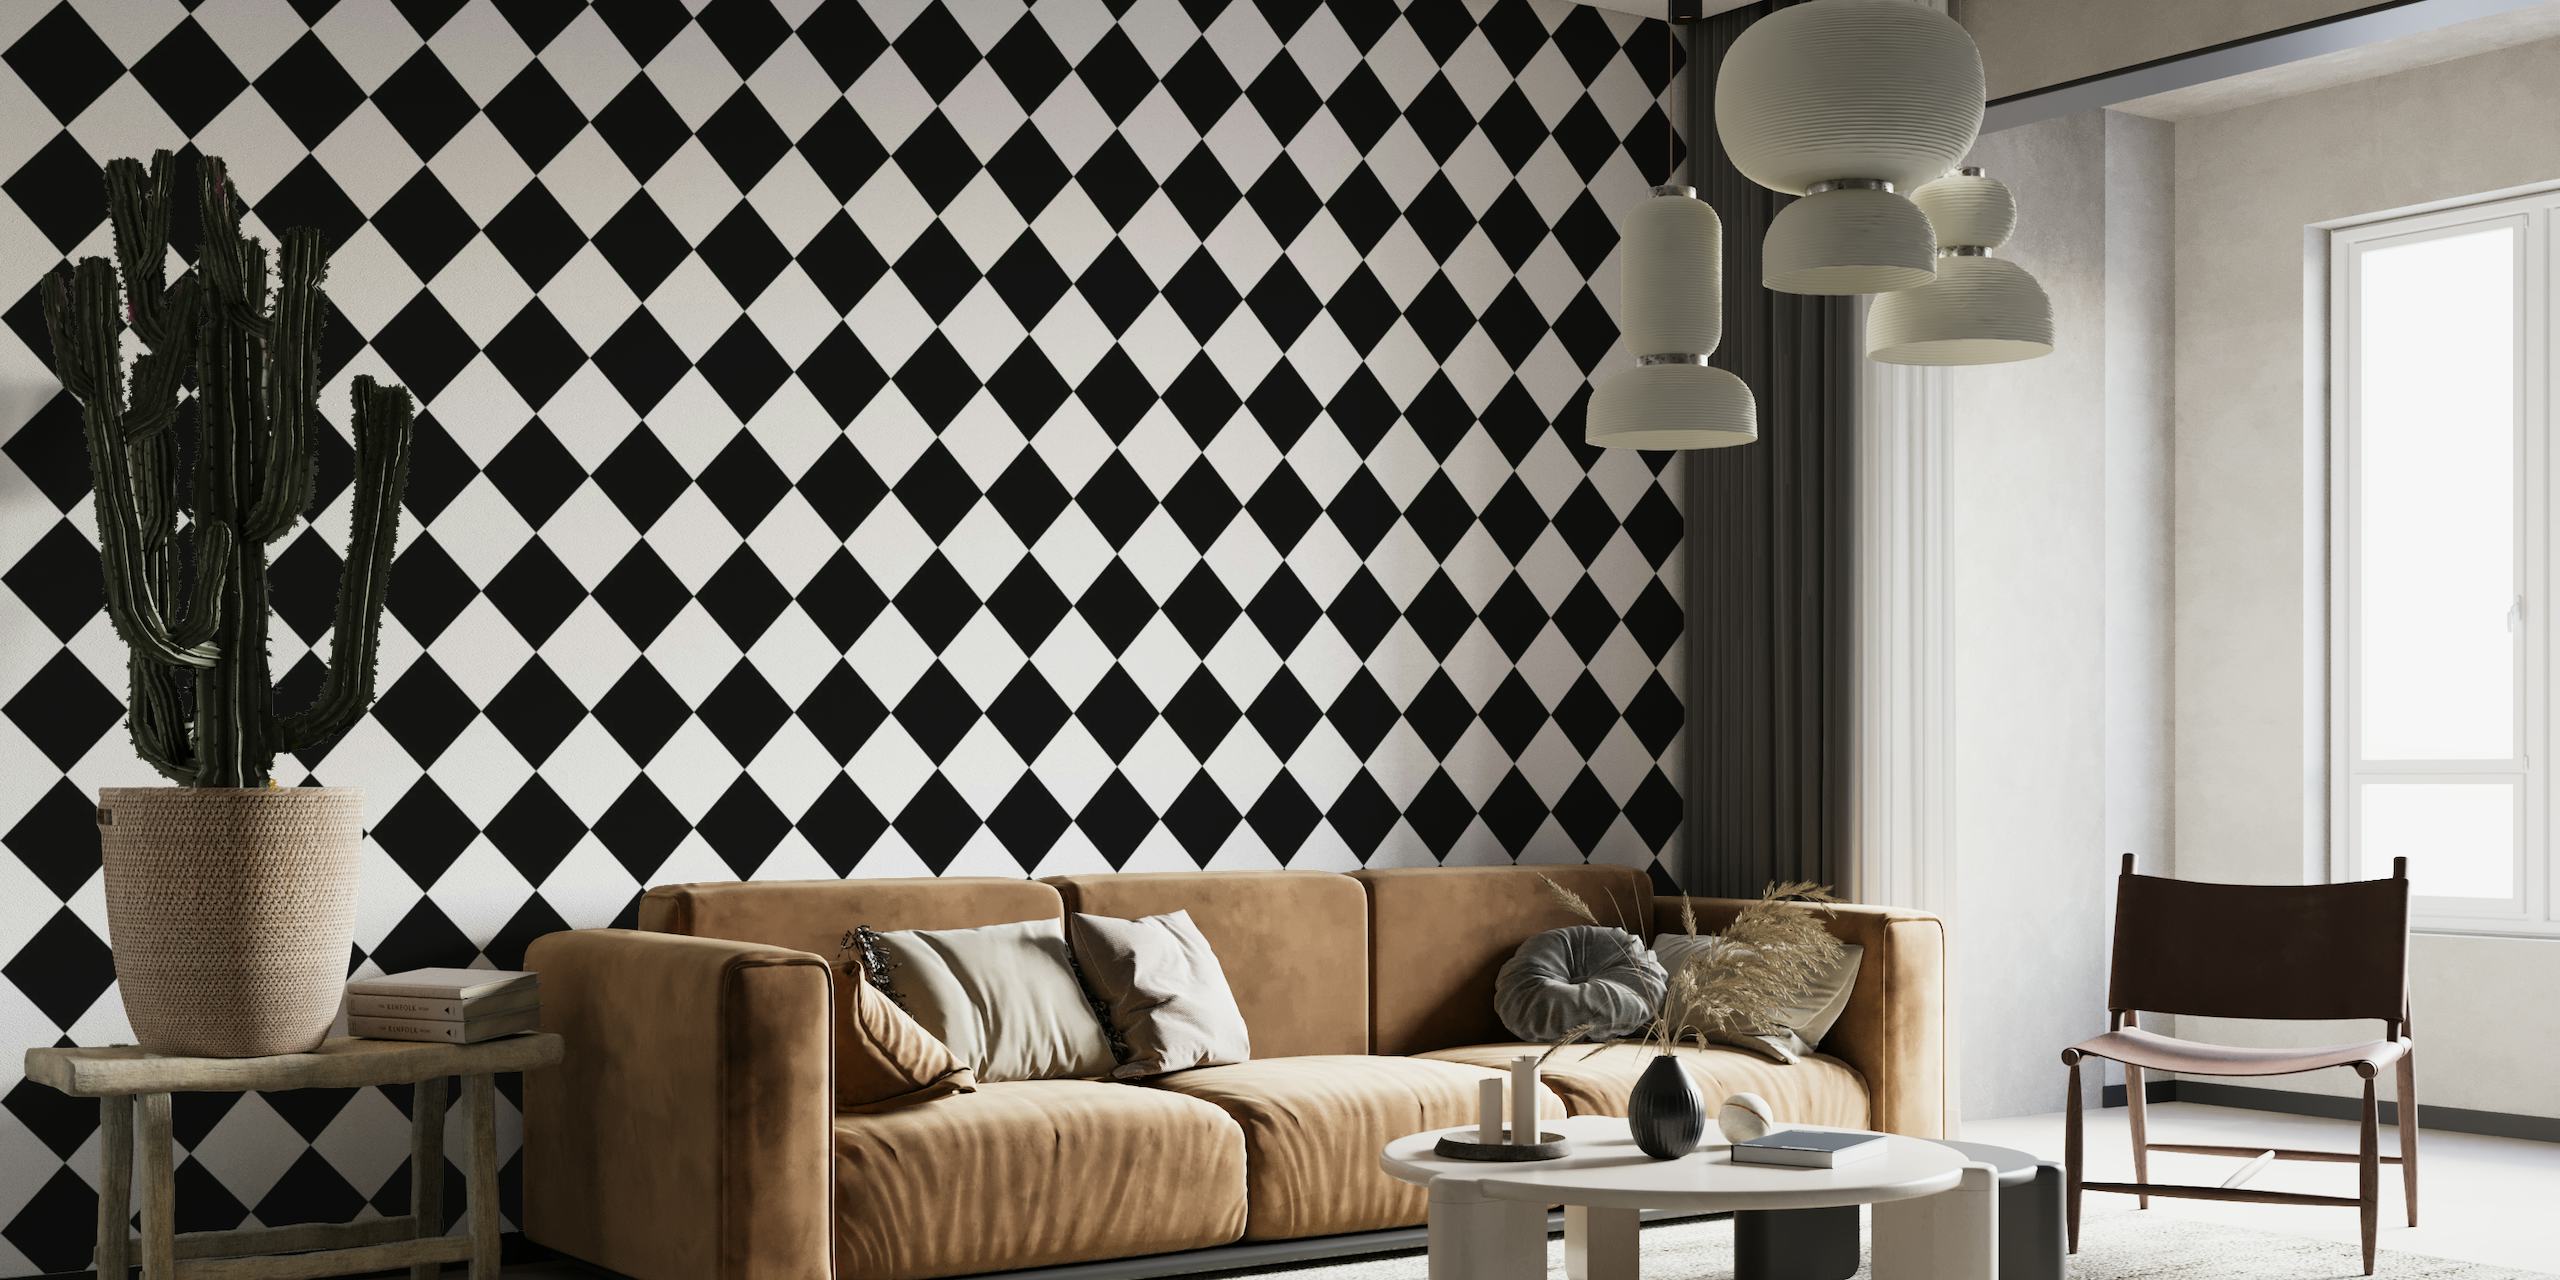 Diagonal Checkerboard Large - Black and White carta da parati